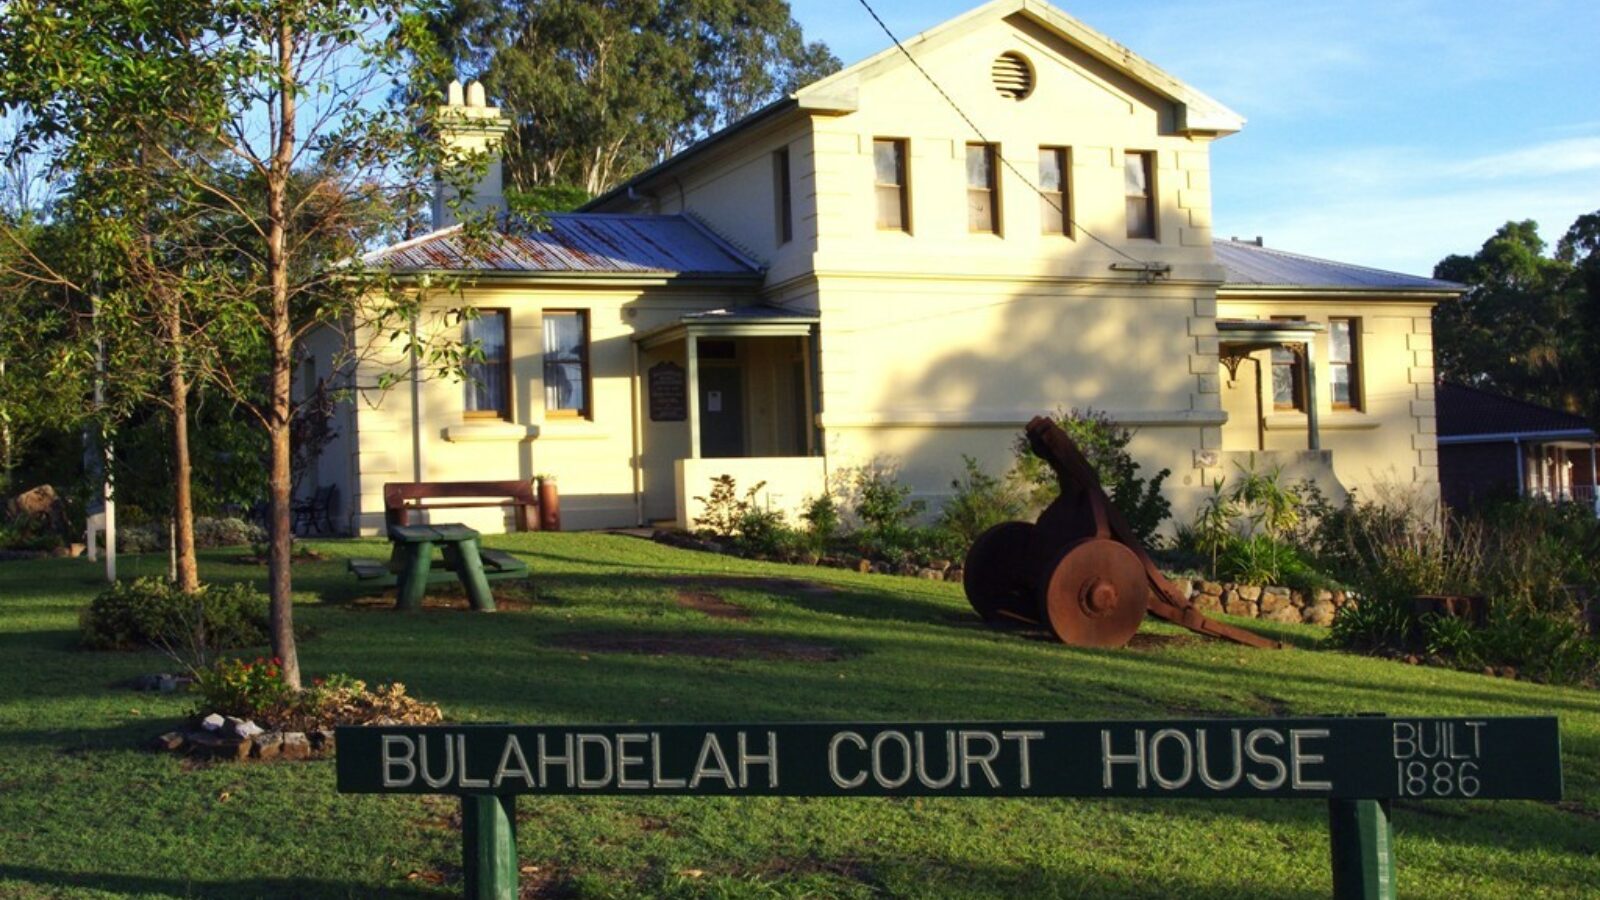 Bulahdelah court house museum